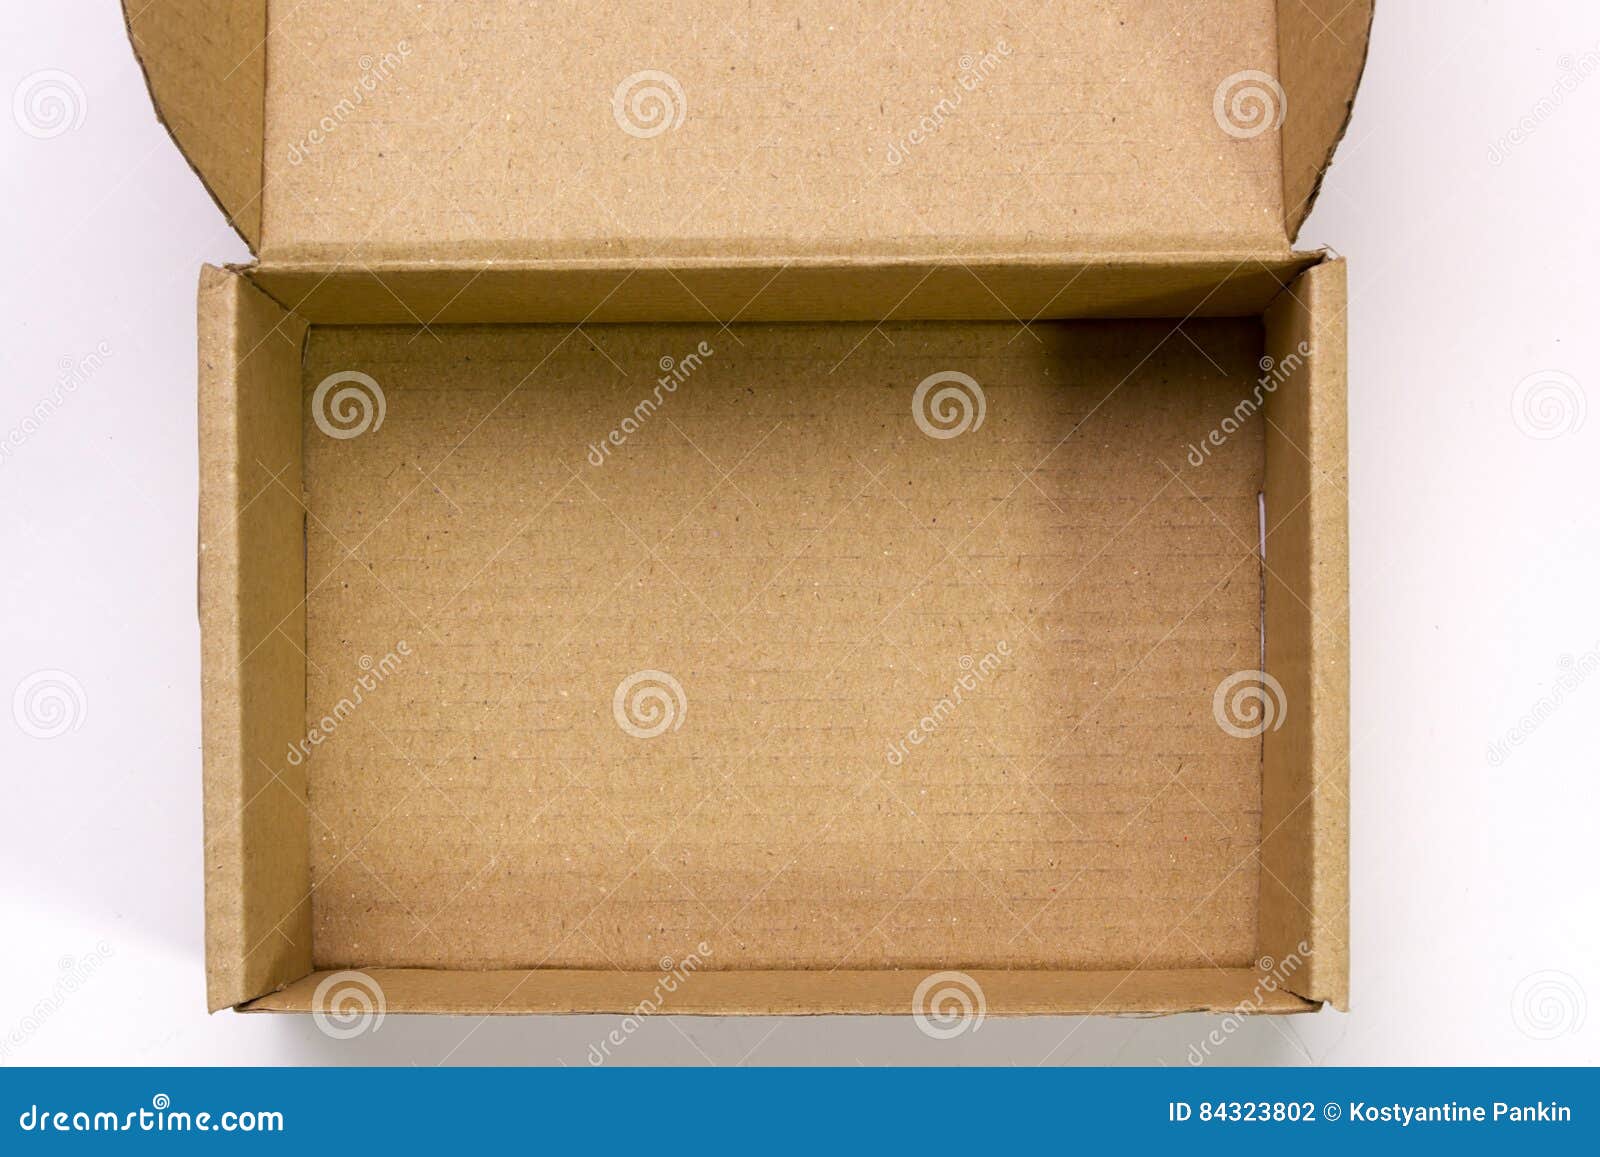 Коробка вид сверху. Внутри картонной коробки. Картонные коробки вид сверху. Открытая коробка сверху.